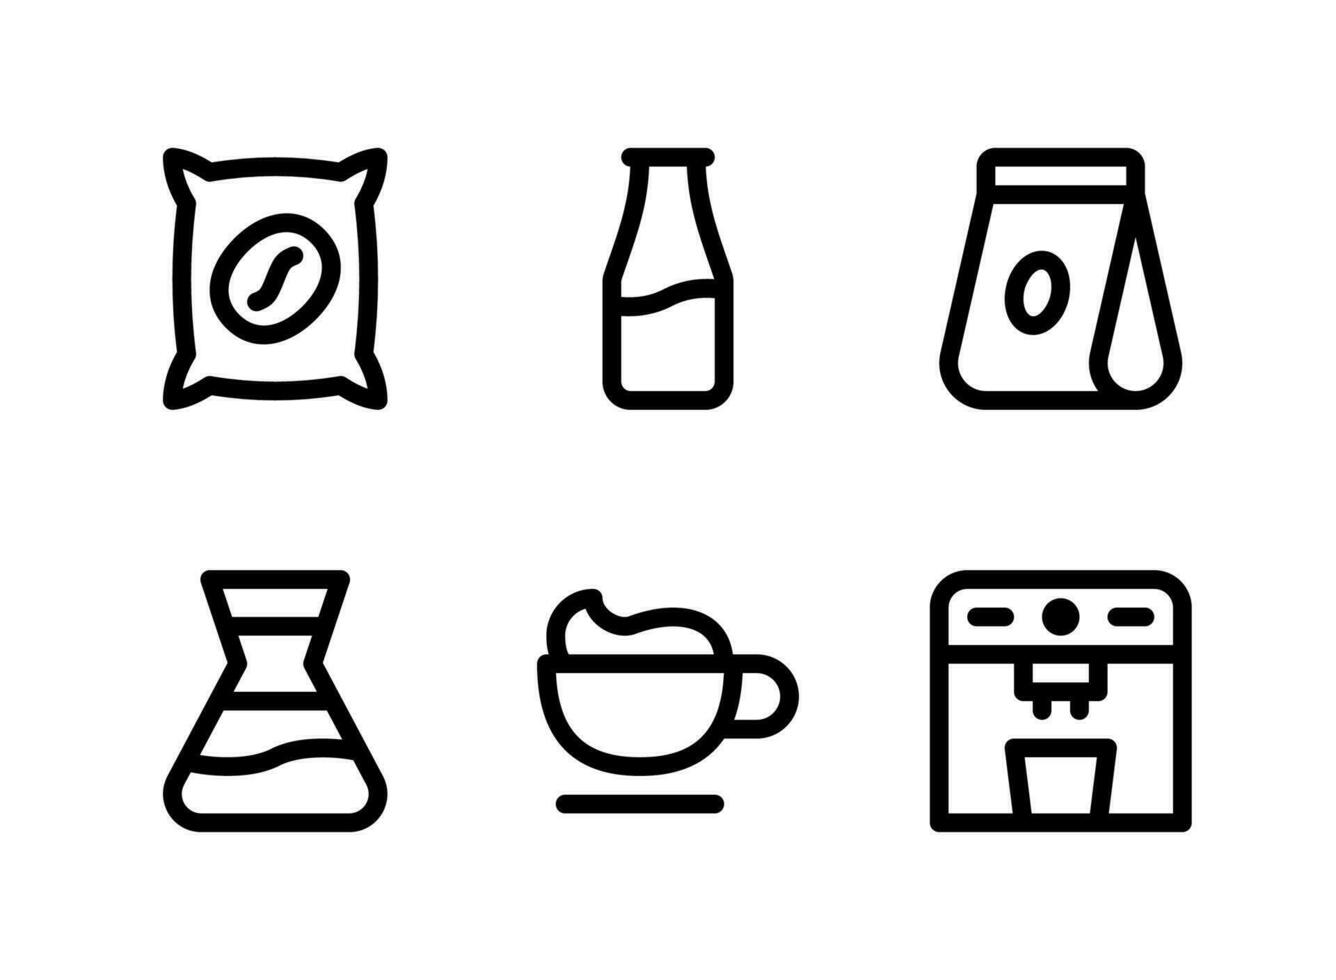 semplice set di icone di linea del vettore relative alla caffetteria. contiene icone come bustina di caffè, latte in bottiglia, pacchetto, latte e altro.